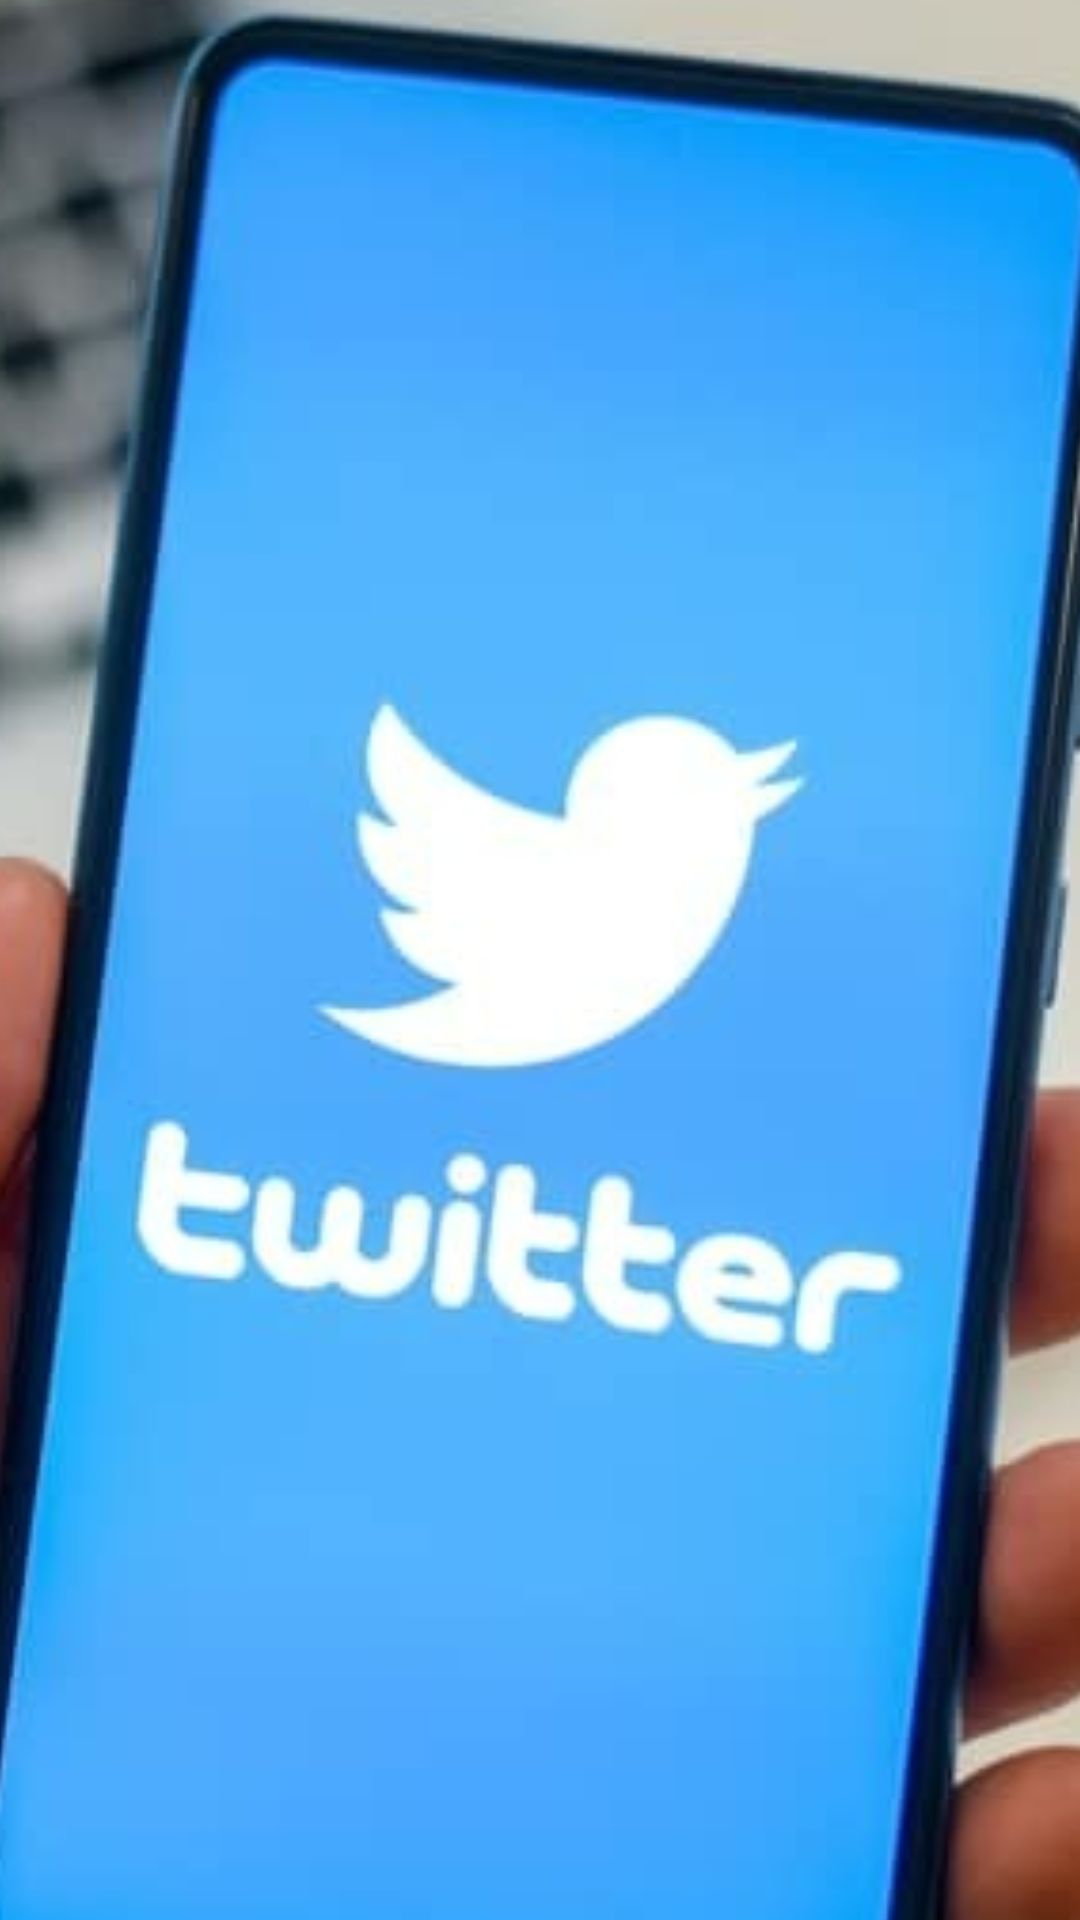 ट्विटर में आने वाला है नया फीचर, कर सकेंगे लंबा-चौड़ा ट्वीट